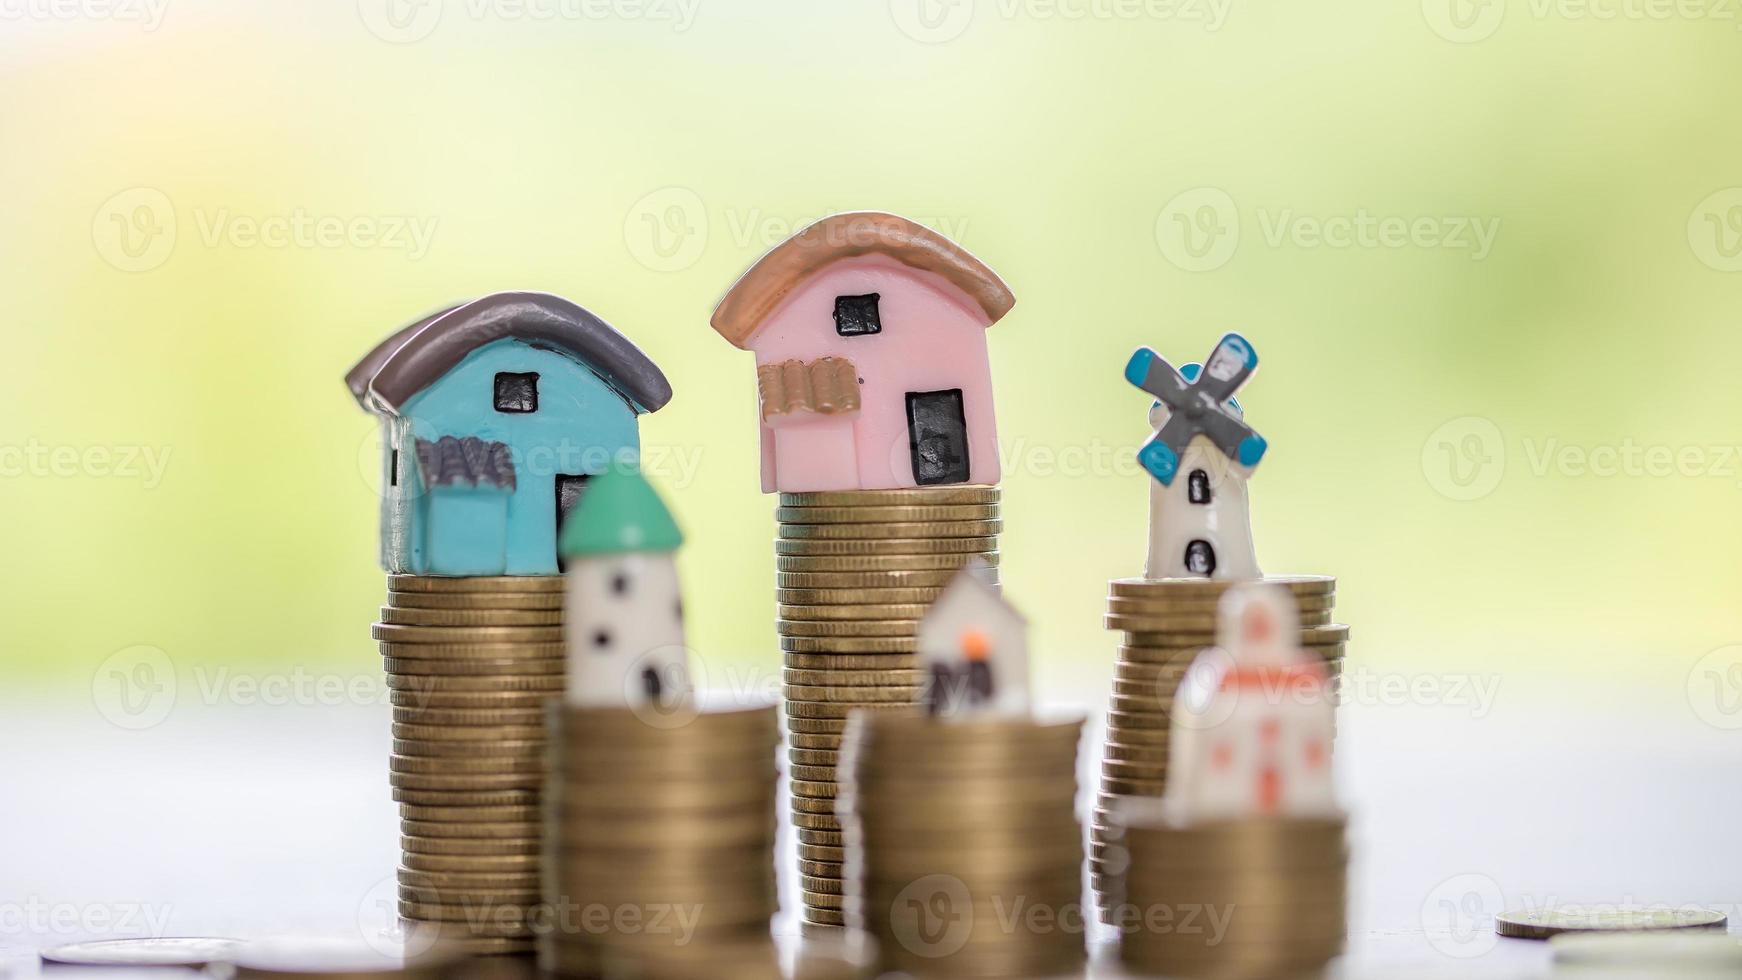 modèle de maison et piles de pièces d'argent avec fond nature flou. plans d'épargne pour la maison, le prêt, l'investissement, l'hypothèque, la finance et la banque sur le concept de maison. photo